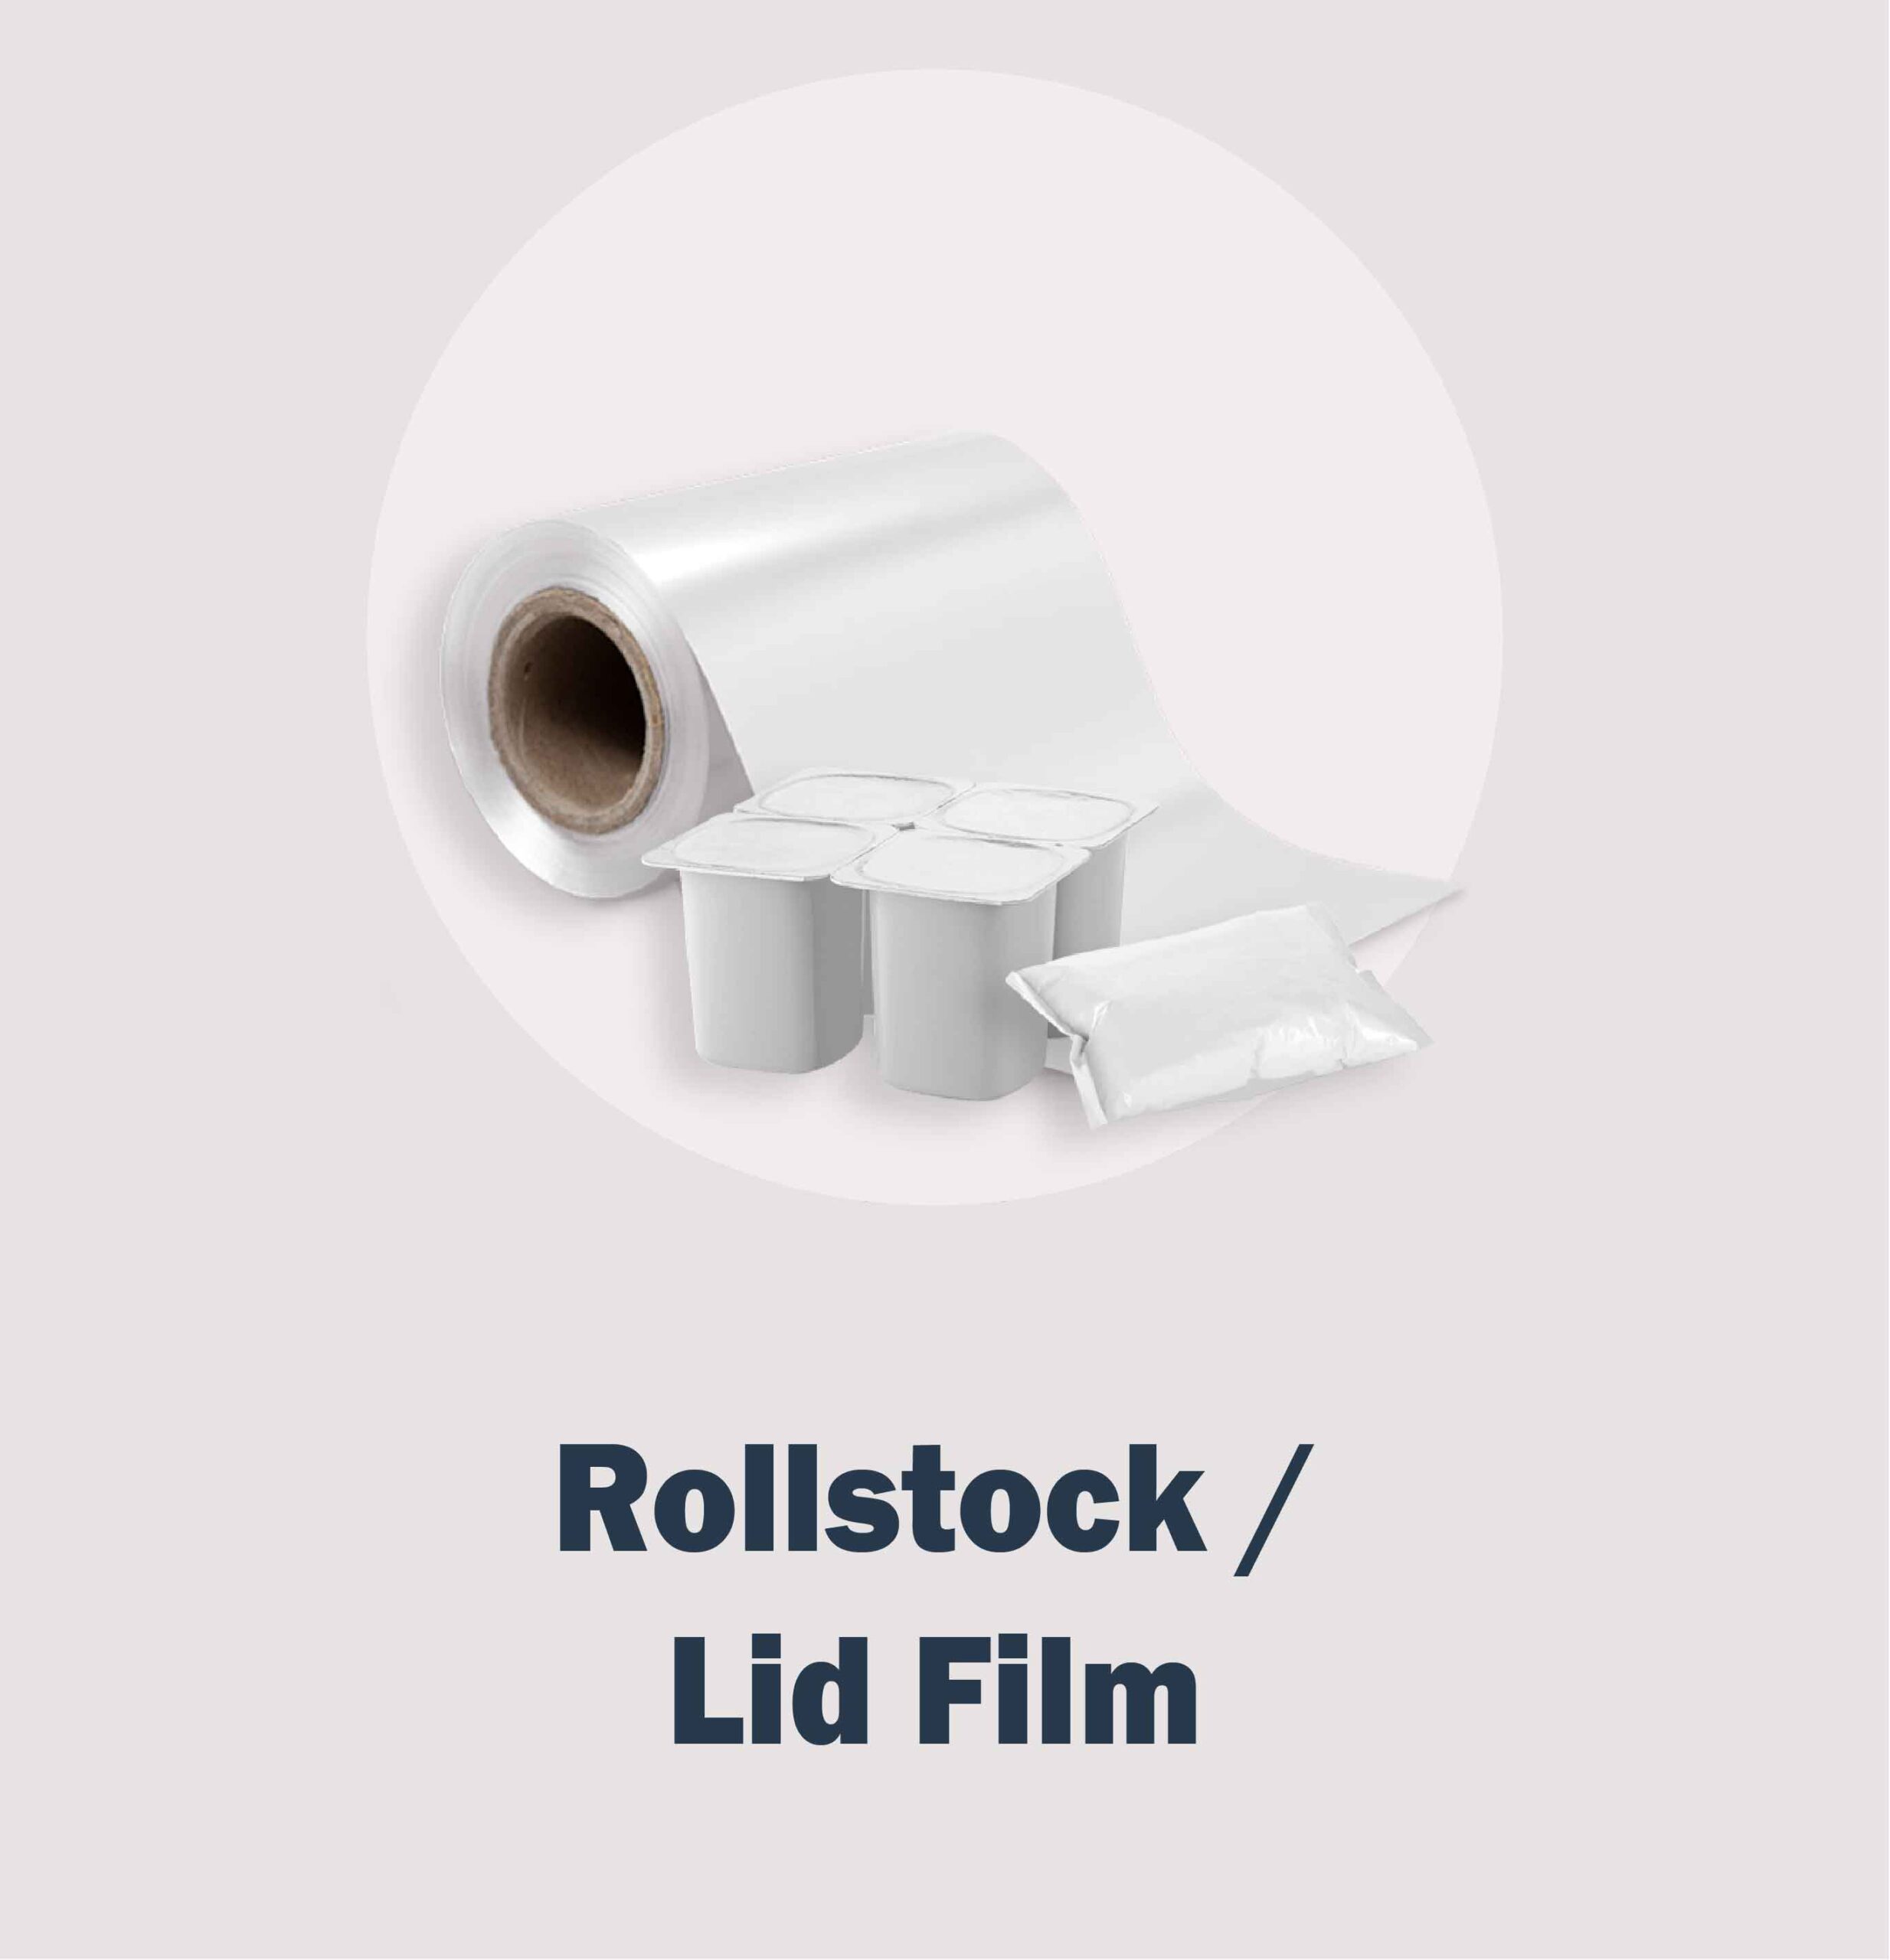 Rollstock/ Lid Film